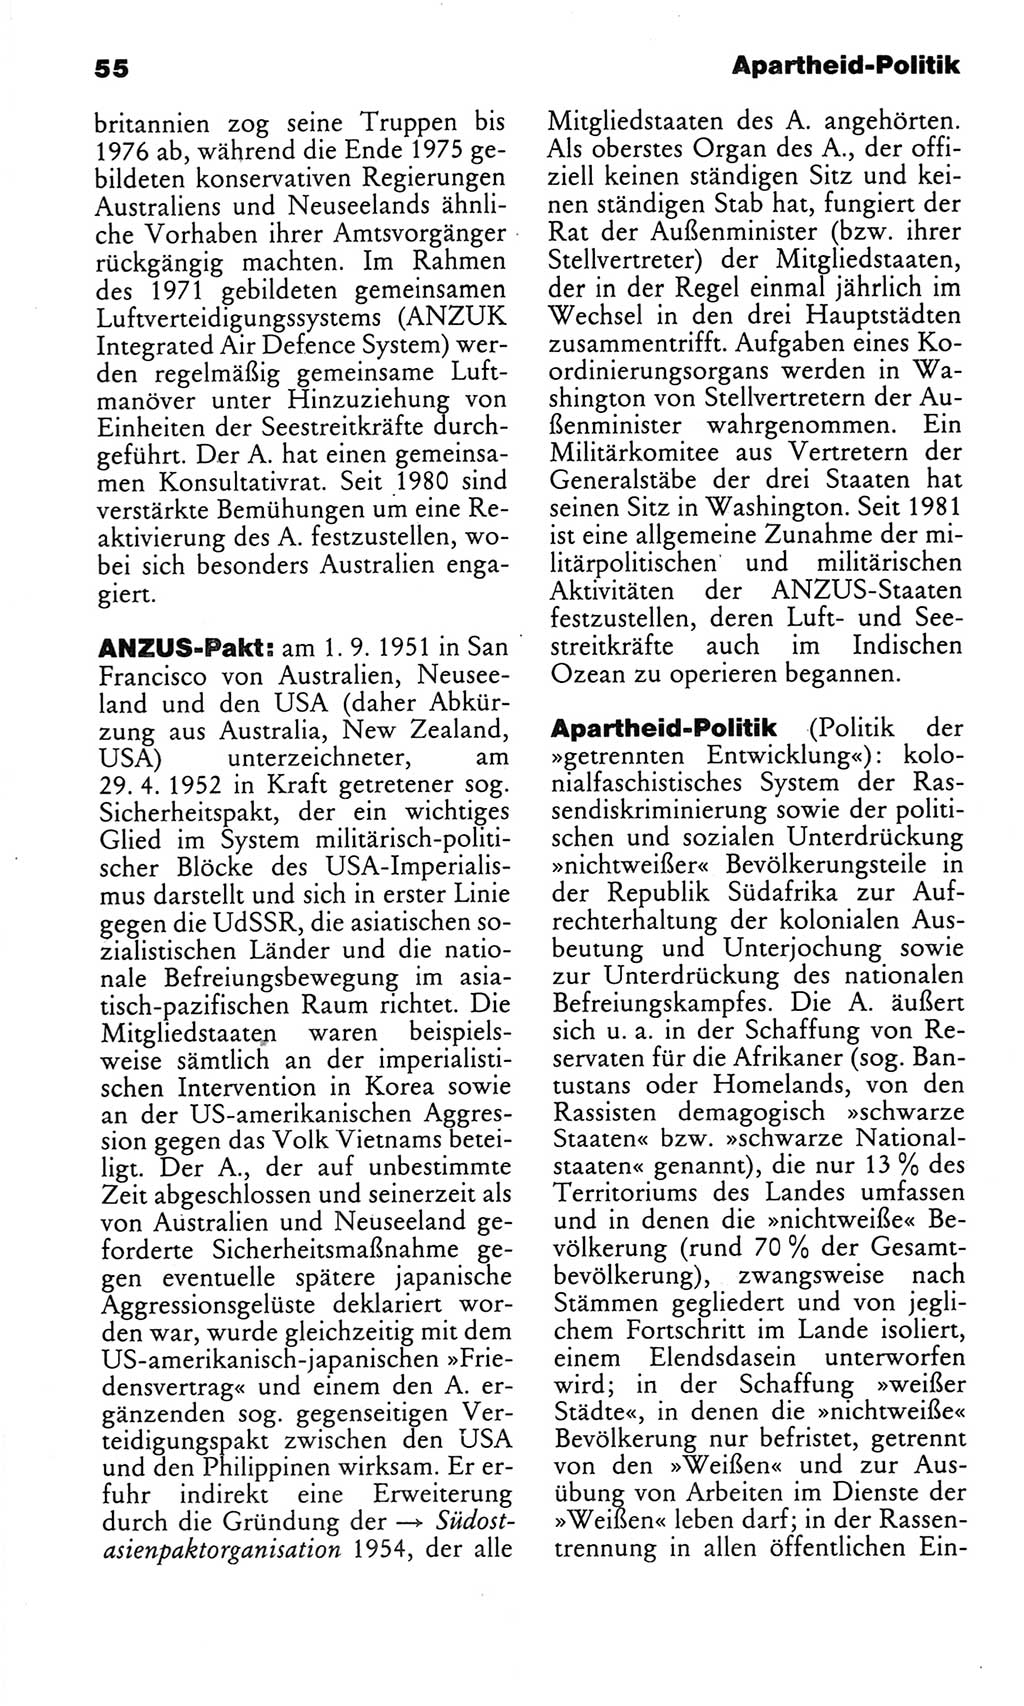 Kleines politisches Wörterbuch [Deutsche Demokratische Republik (DDR)] 1986, Seite 55 (Kl. pol. Wb. DDR 1986, S. 55)